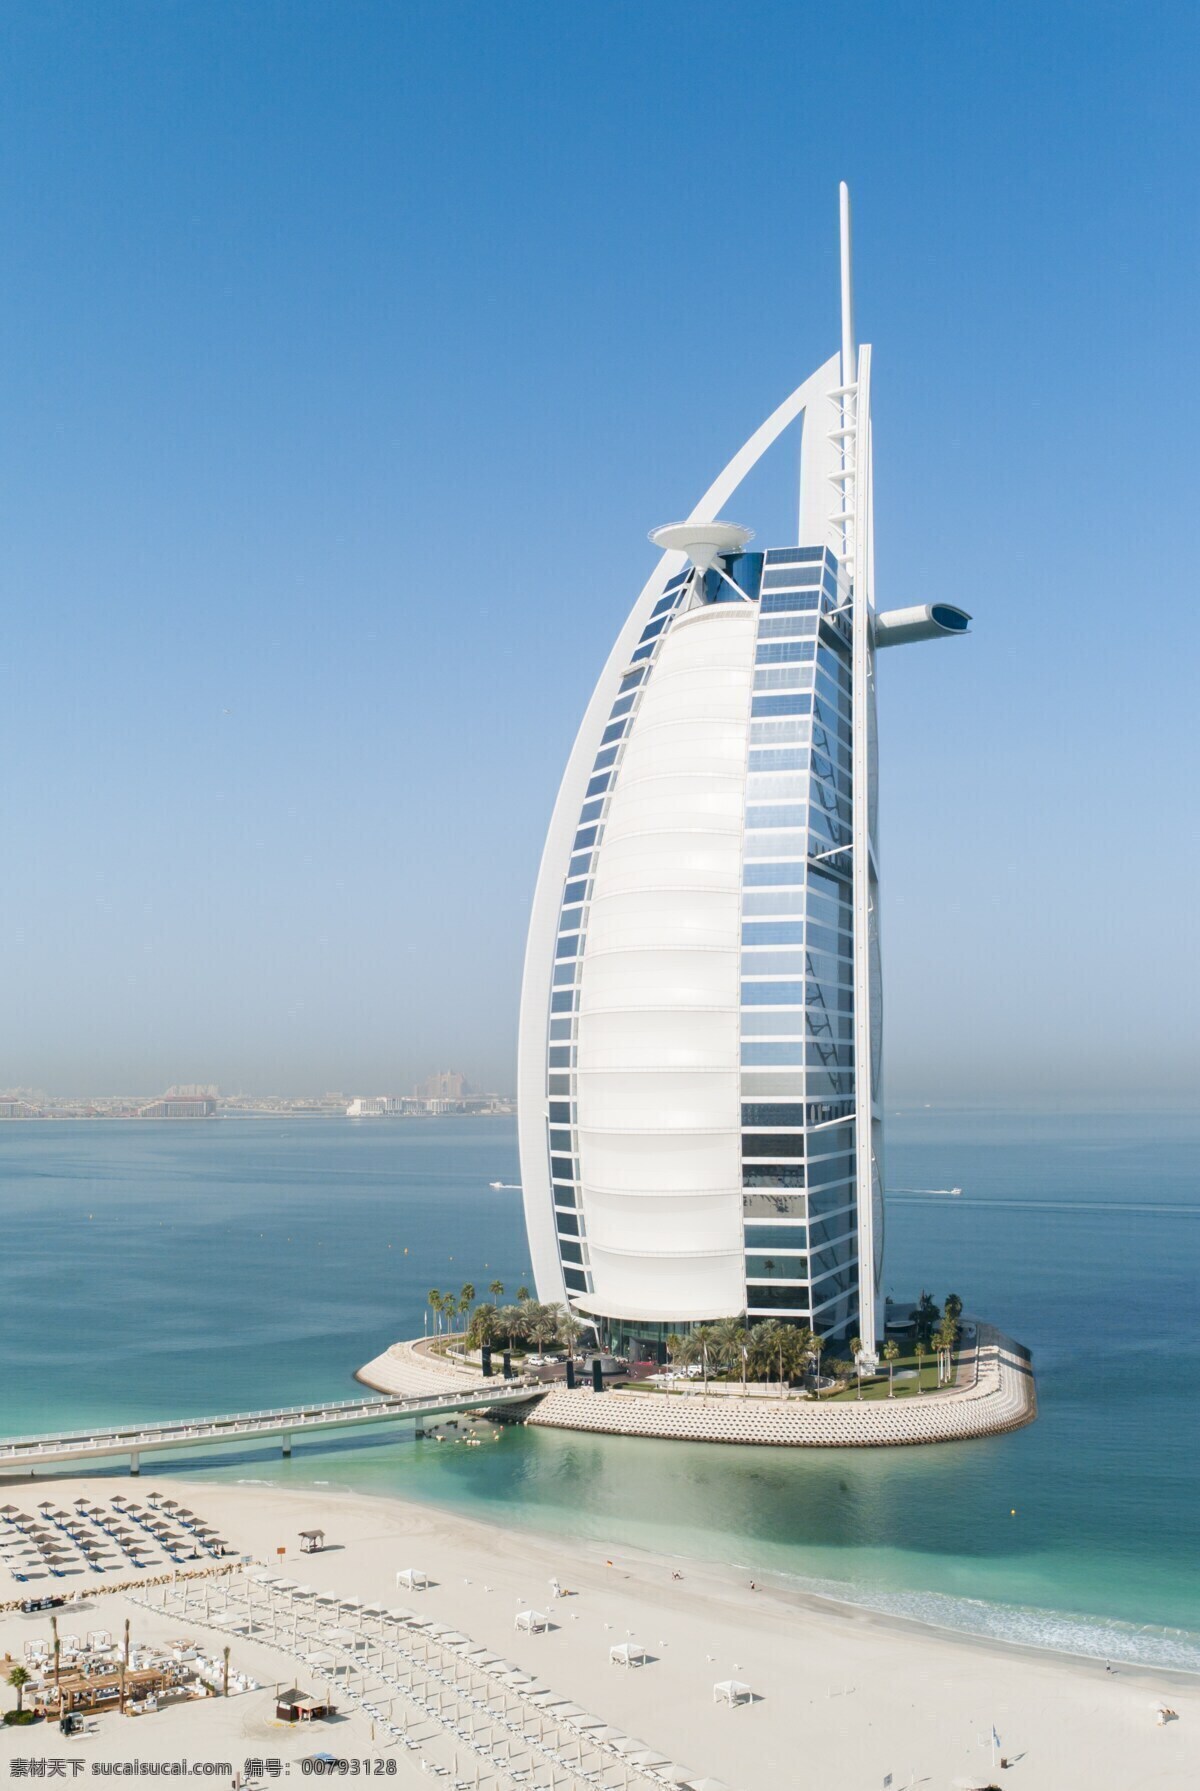 帆船酒店 迪拜建筑 高层建筑 现代建筑 摩天大楼 高楼大厦 城市建筑 地标建筑 建筑园林 建筑摄影